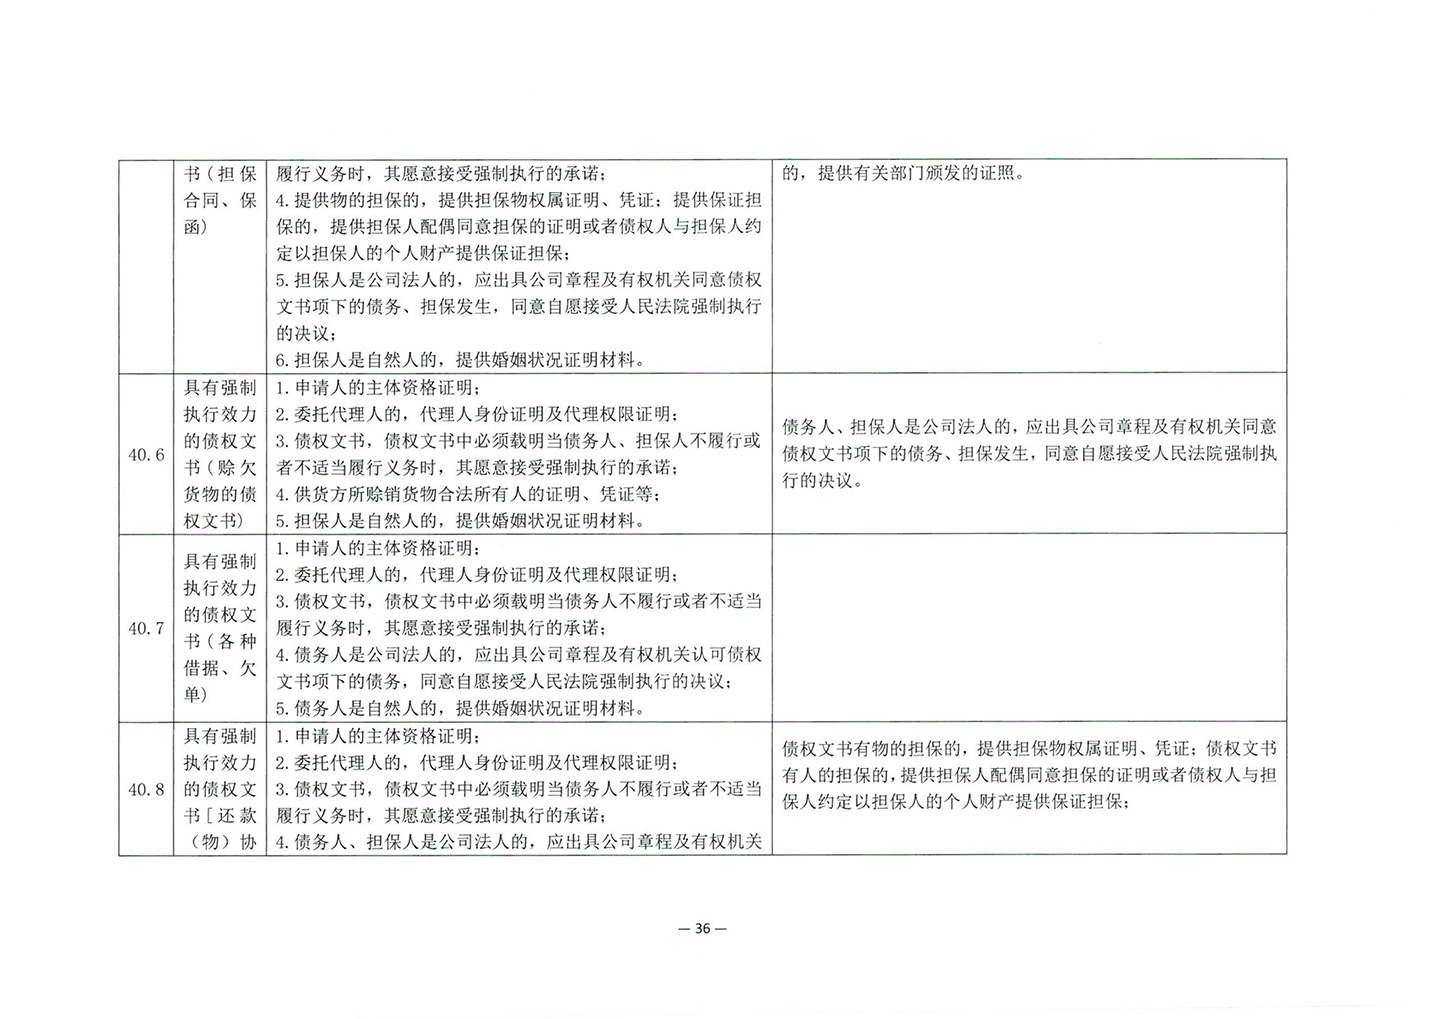 010417243466_03北京市公证协会关于印发《公证机构受理公证事项事务申请证明材料清单》的通知_38